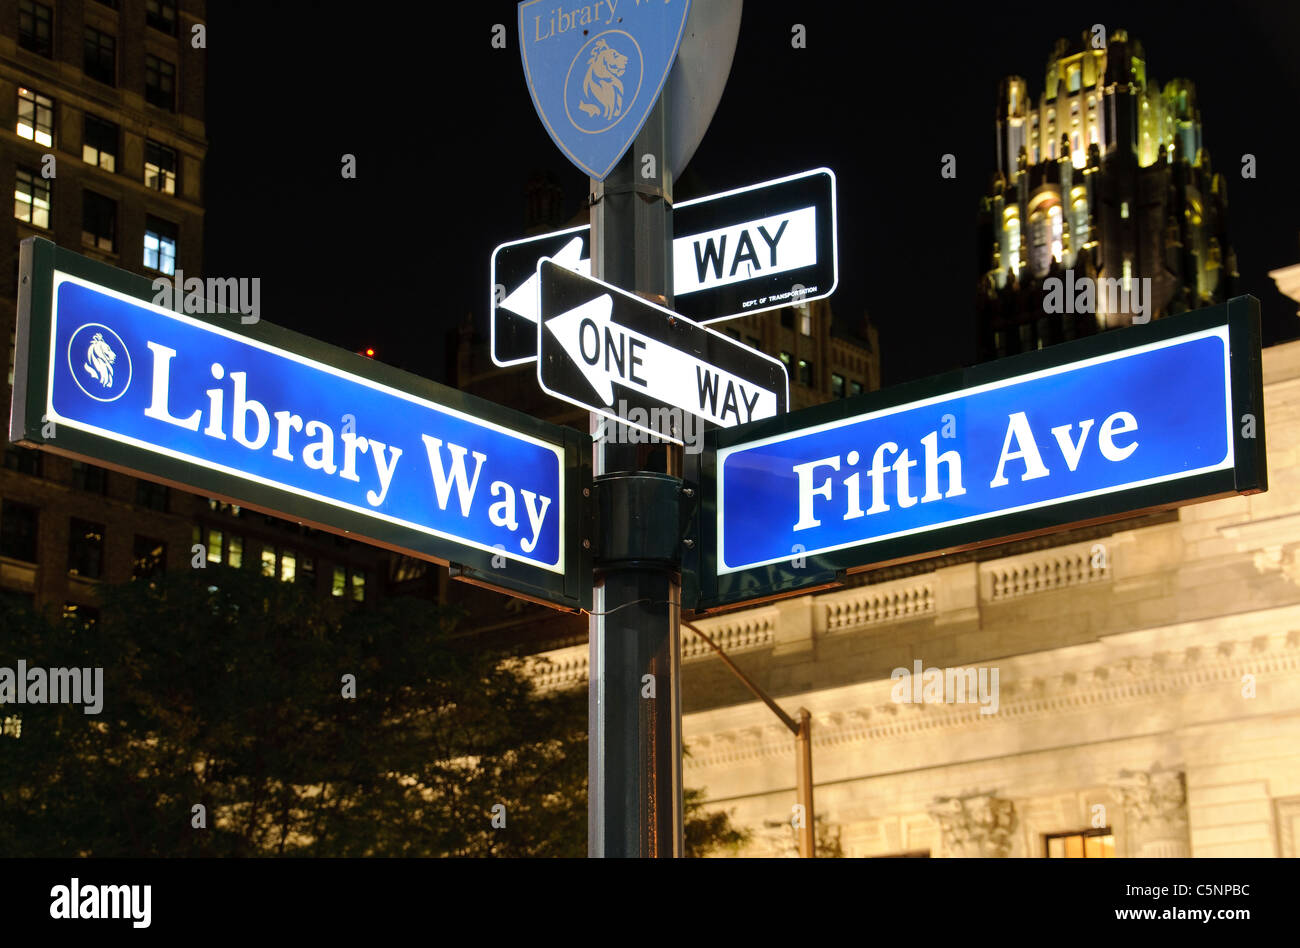 John Bigelow Plaza, Libray Way, 5th Avenue, New York Public Library, NYPL, New York City, USA, Stock Photo